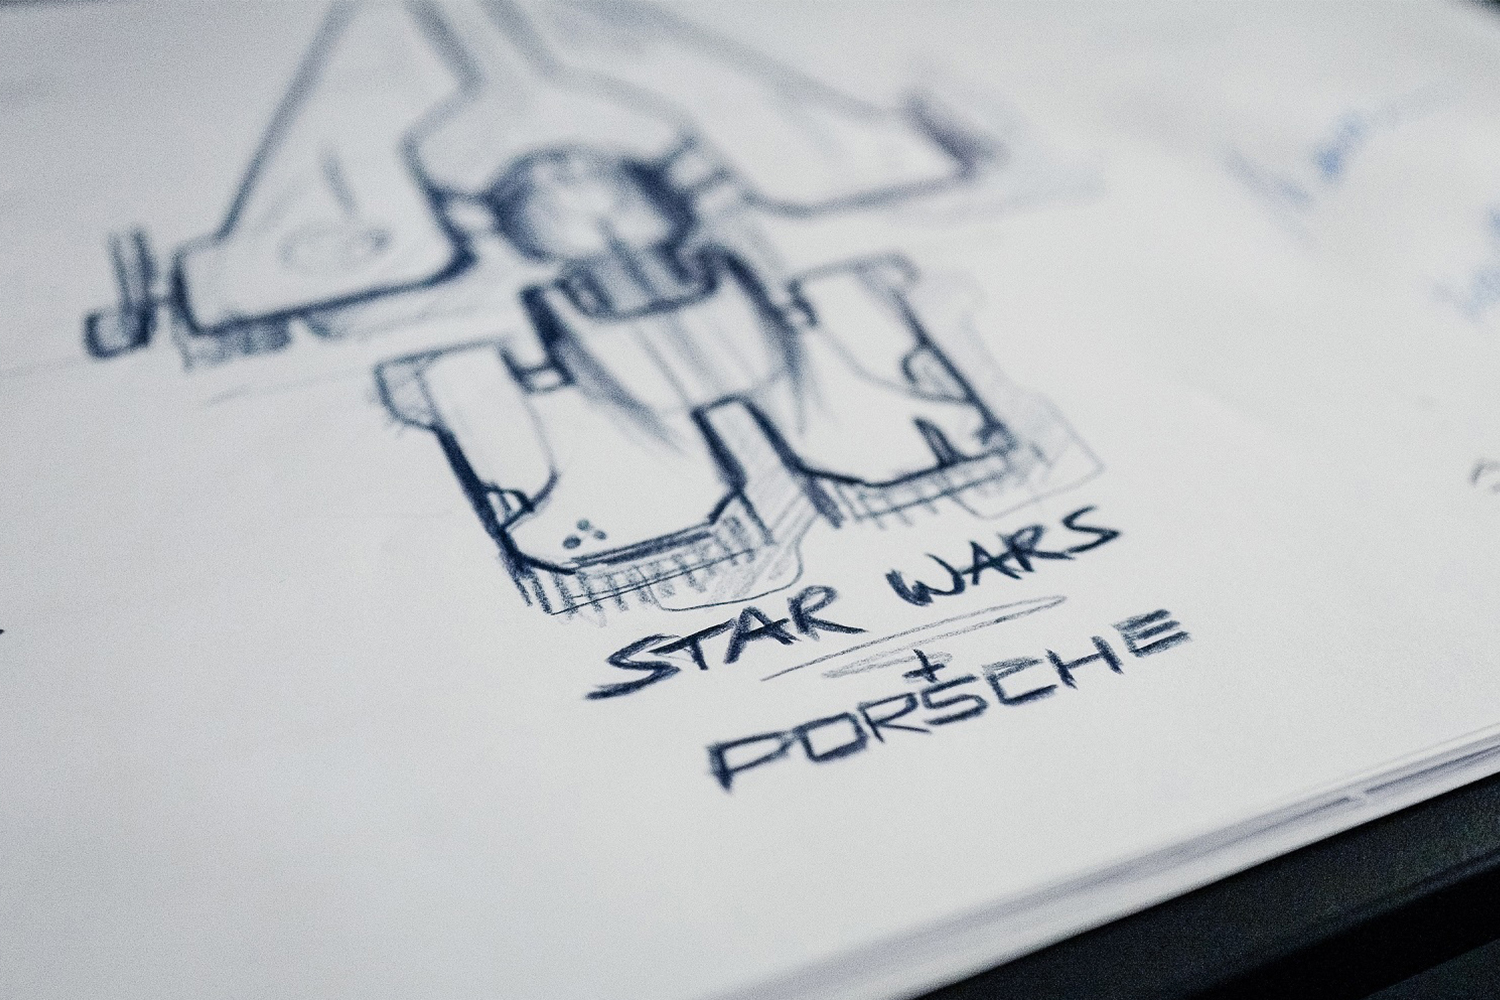 Porsche Star Wars Starship